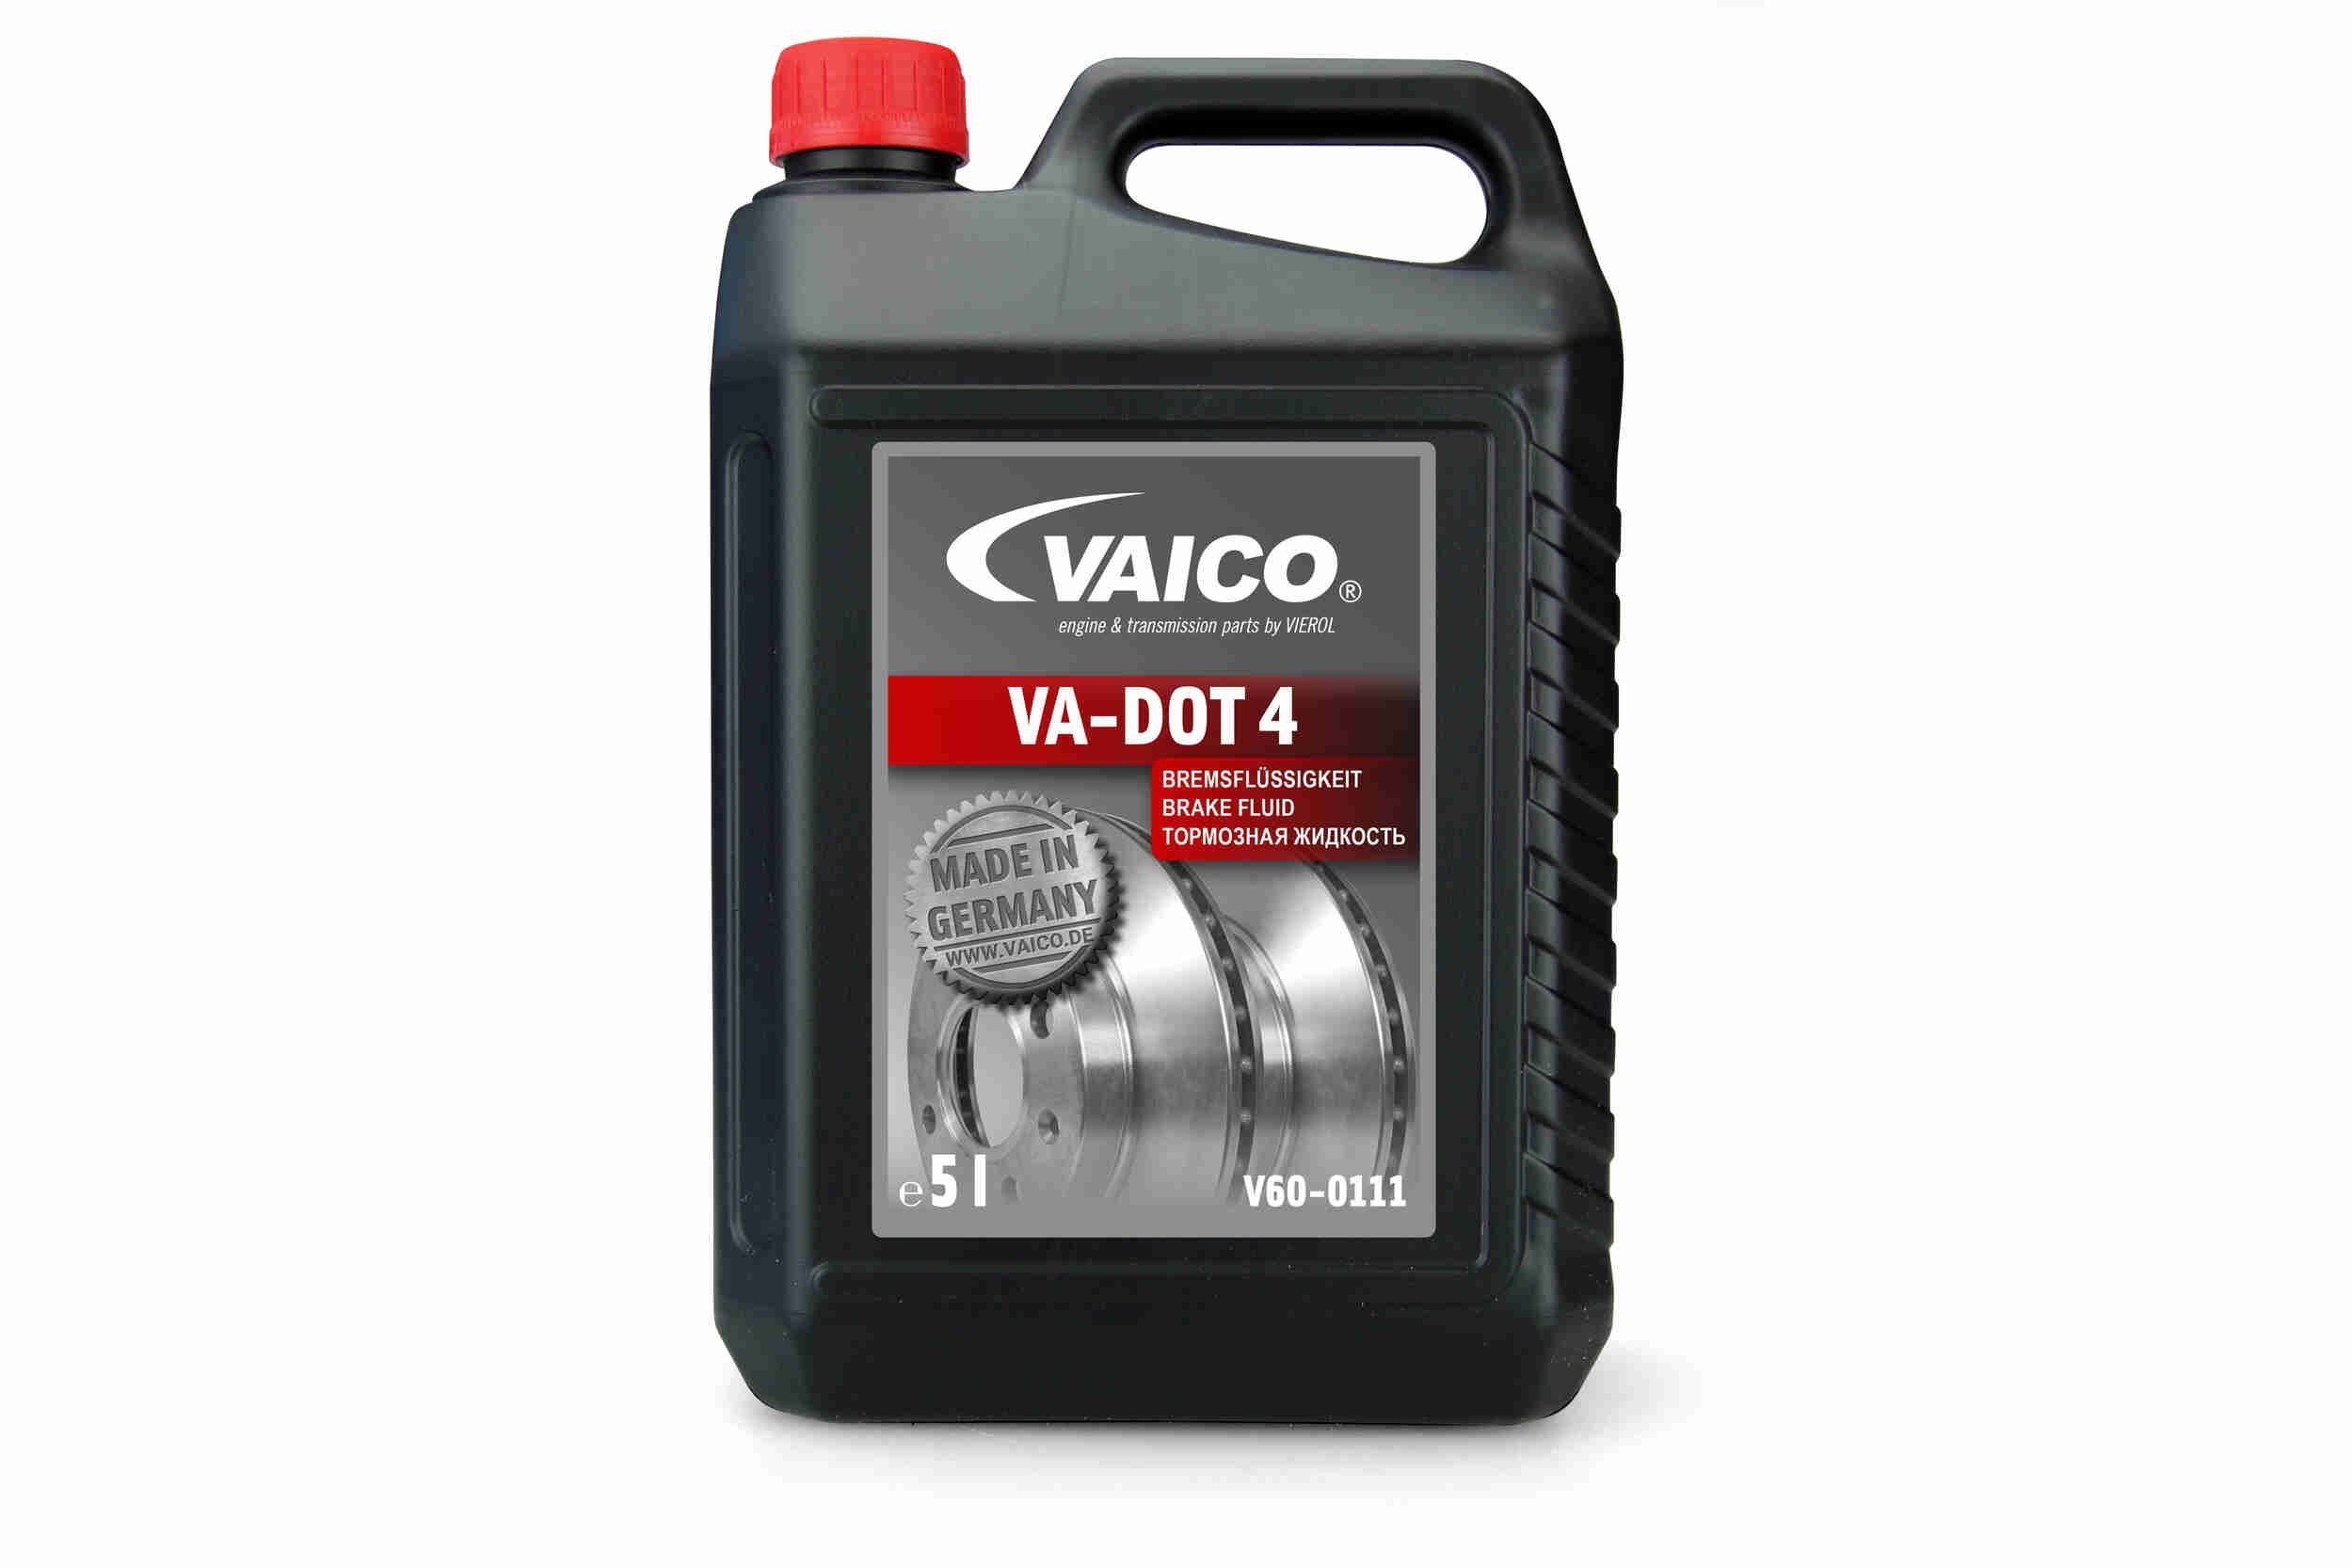 Original V60-0111 VAICO Brake fluid experience and price